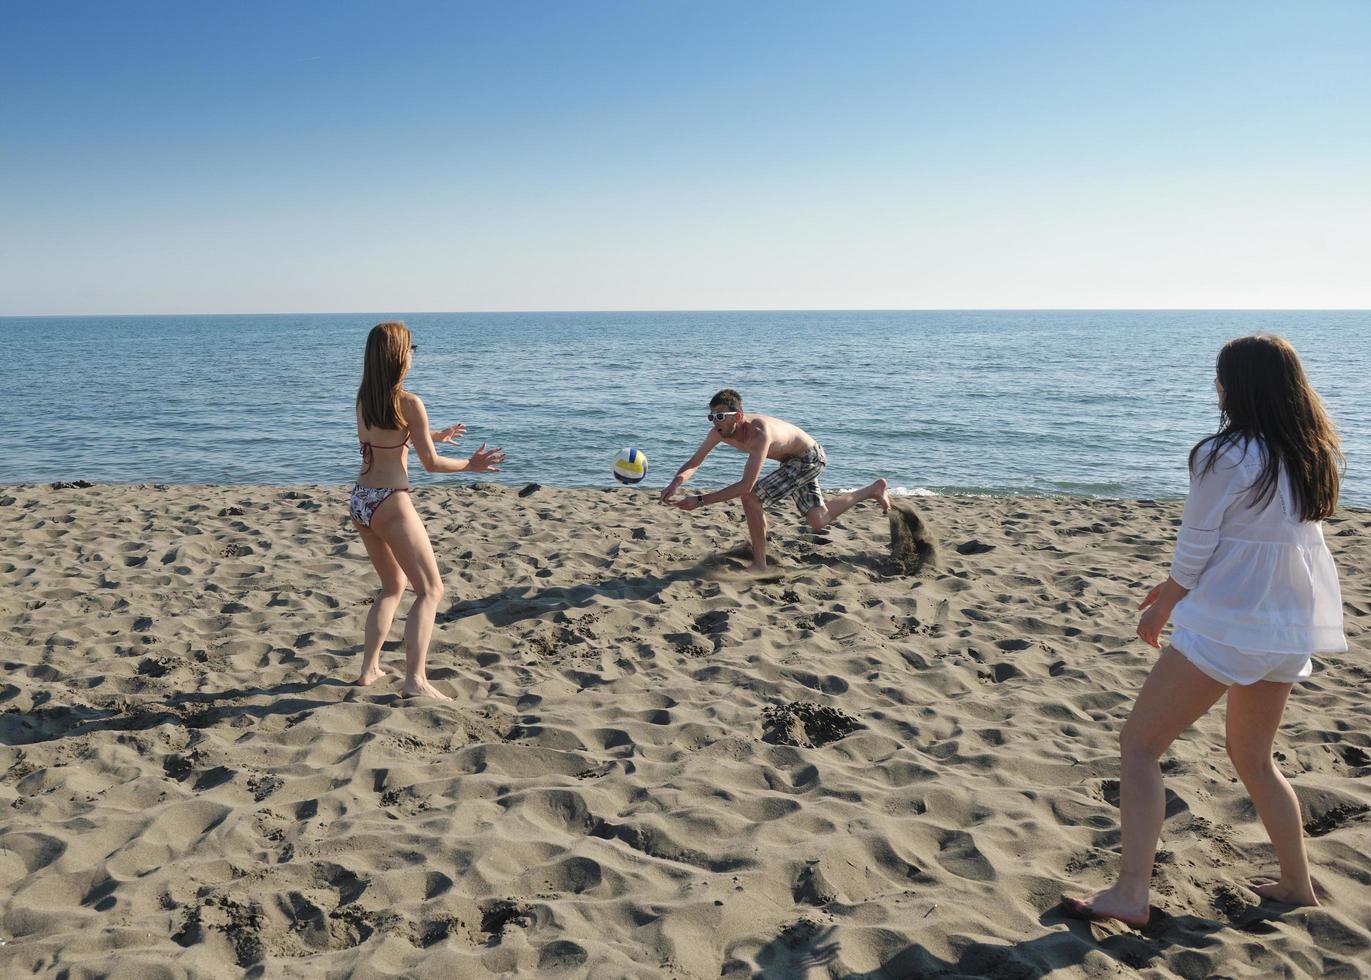 giovane persone gruppo avere divertimento e giocare spiaggia pallavolo foto